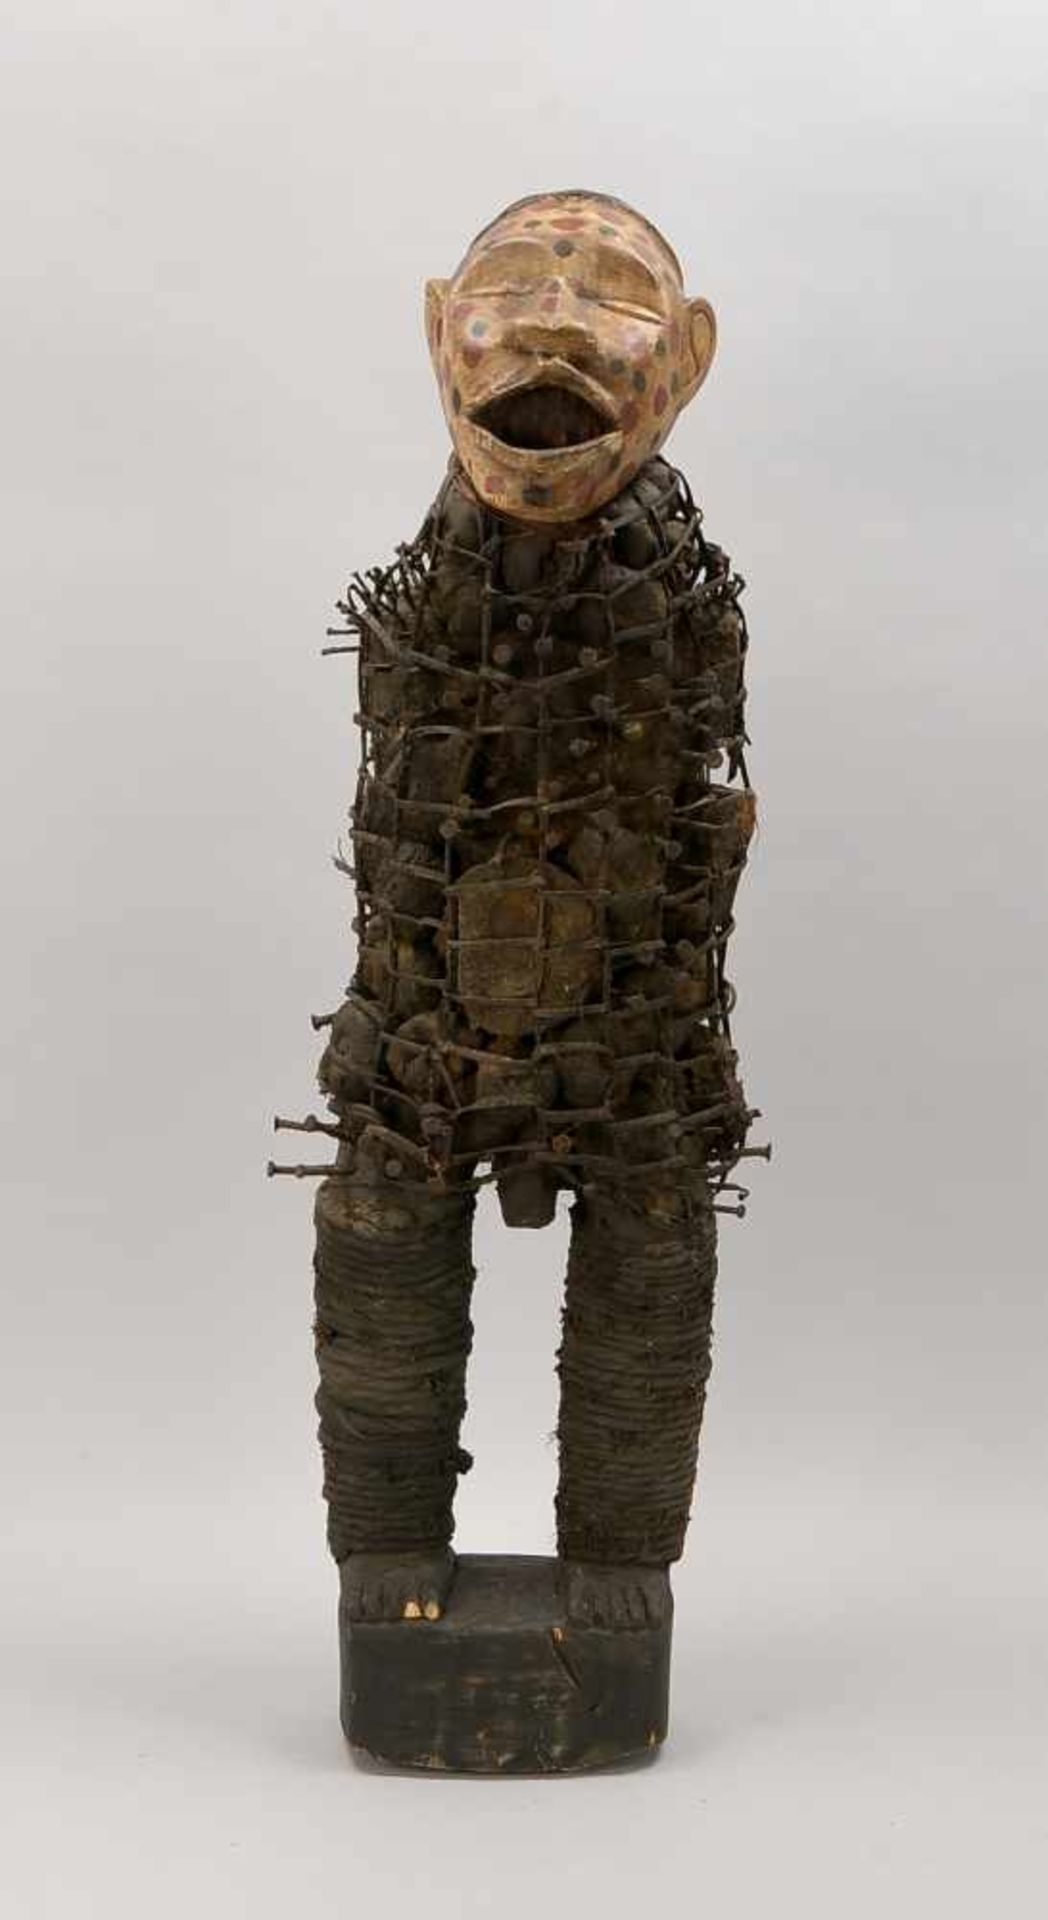 Nagelfetisch, 'Nkisi', Vili/Kongo, aus Metall/Holz und Gewebe; Maße ca. 100 cm x 34 cm - Bild 2 aus 2